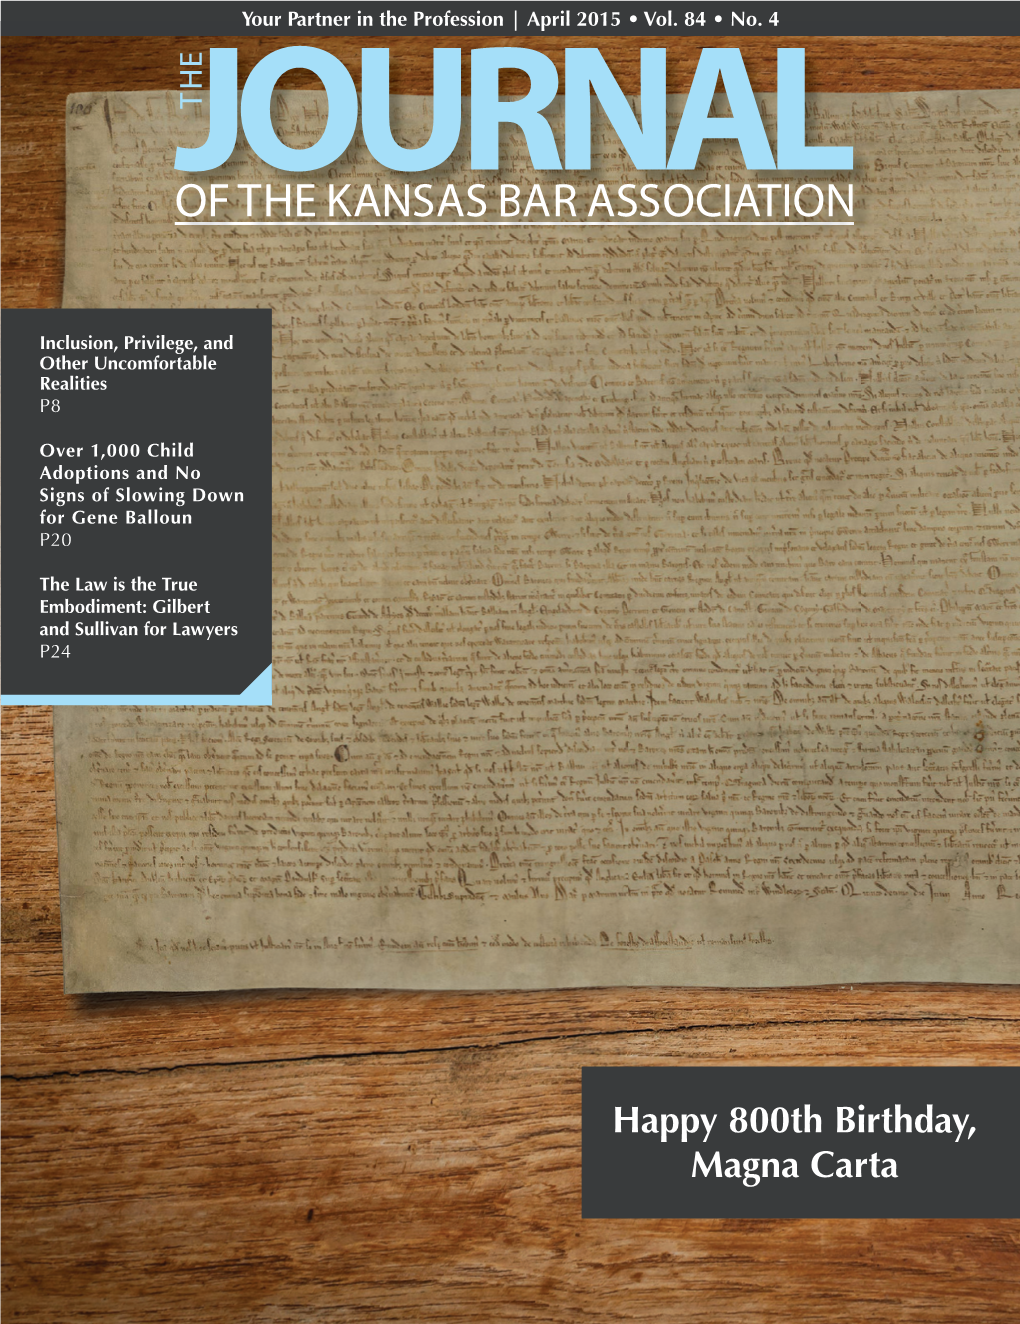 Happy 800Th Birthday, Magna Carta